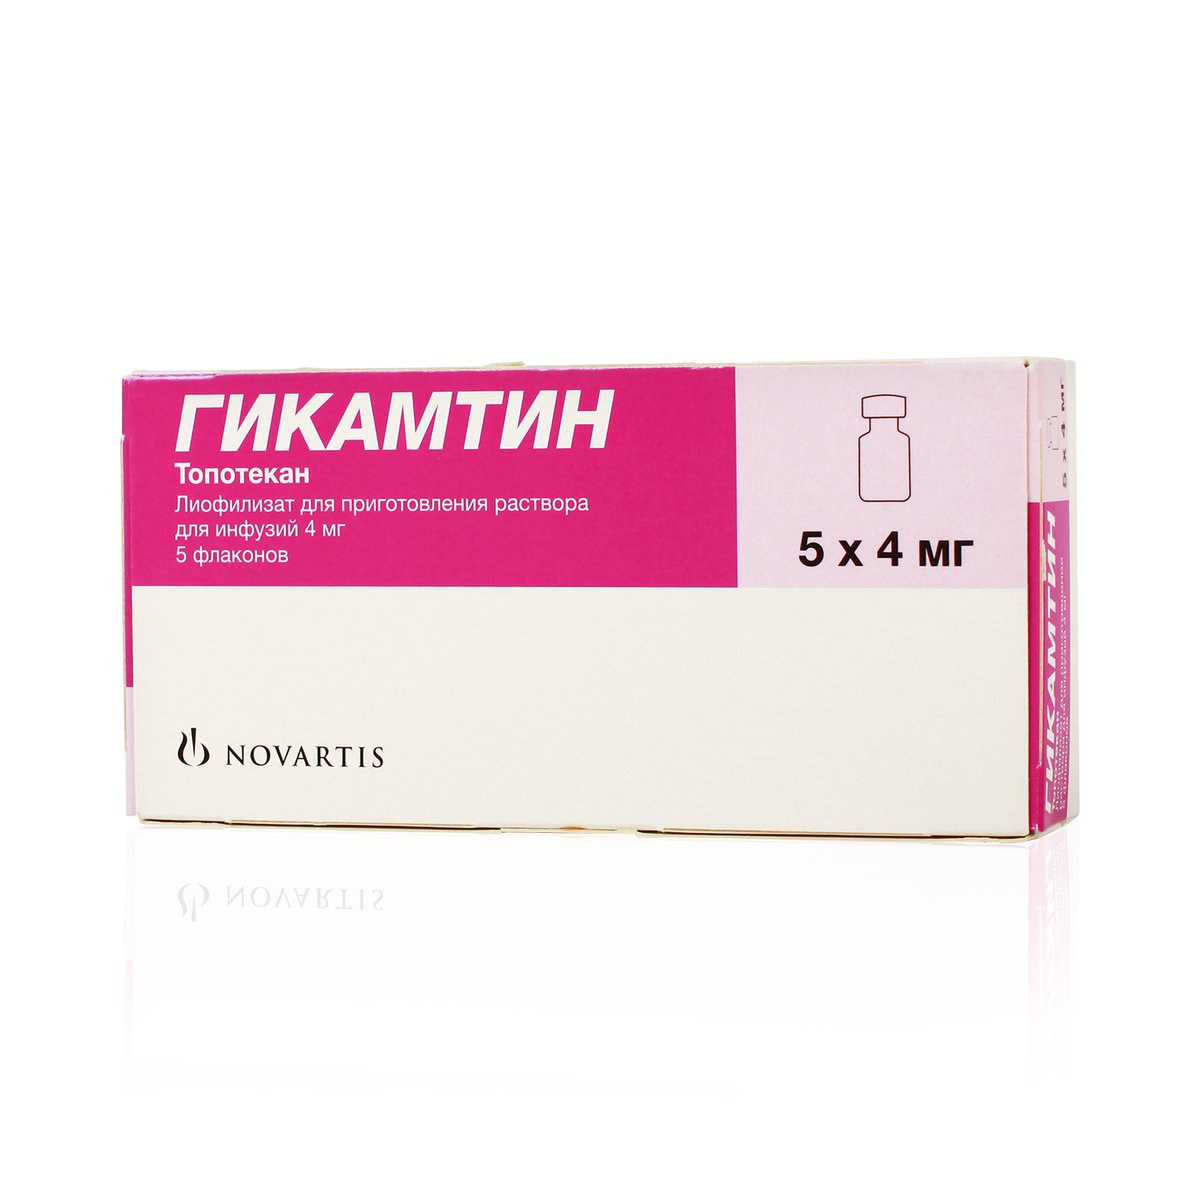 Гикамтин (лиофилизат, 5 шт, 4 мг, для инфузий) - цена,  онлайн в .